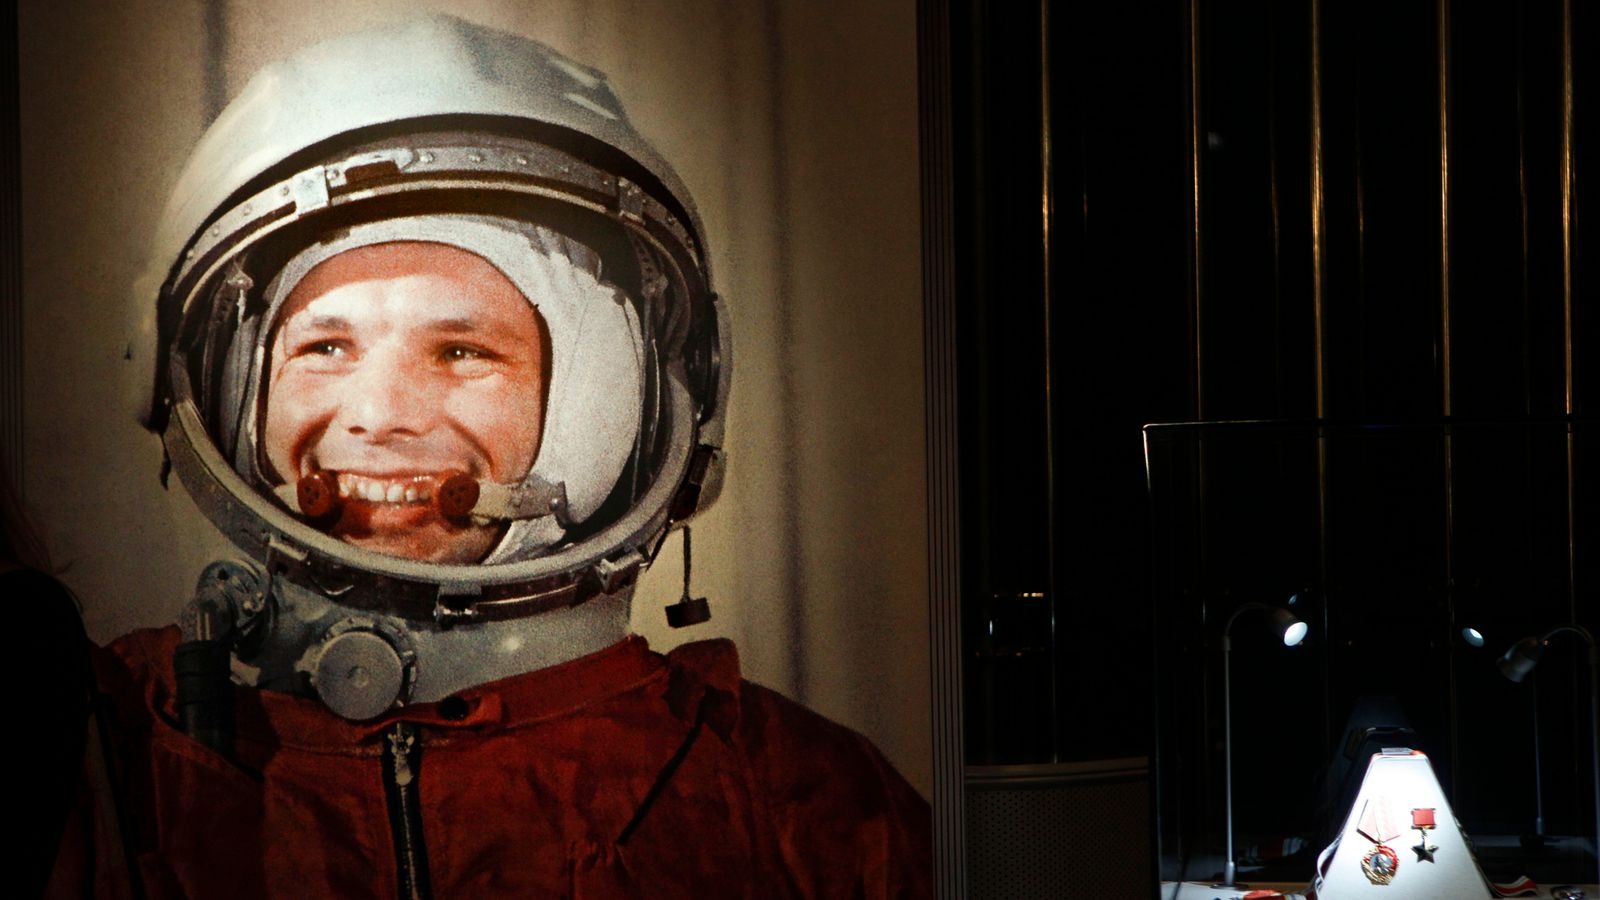 Συμπληρώνονται 60 χρόνια από την πρώτη πτήση του Γιούρι Γκαγκάριν στο διάστημα